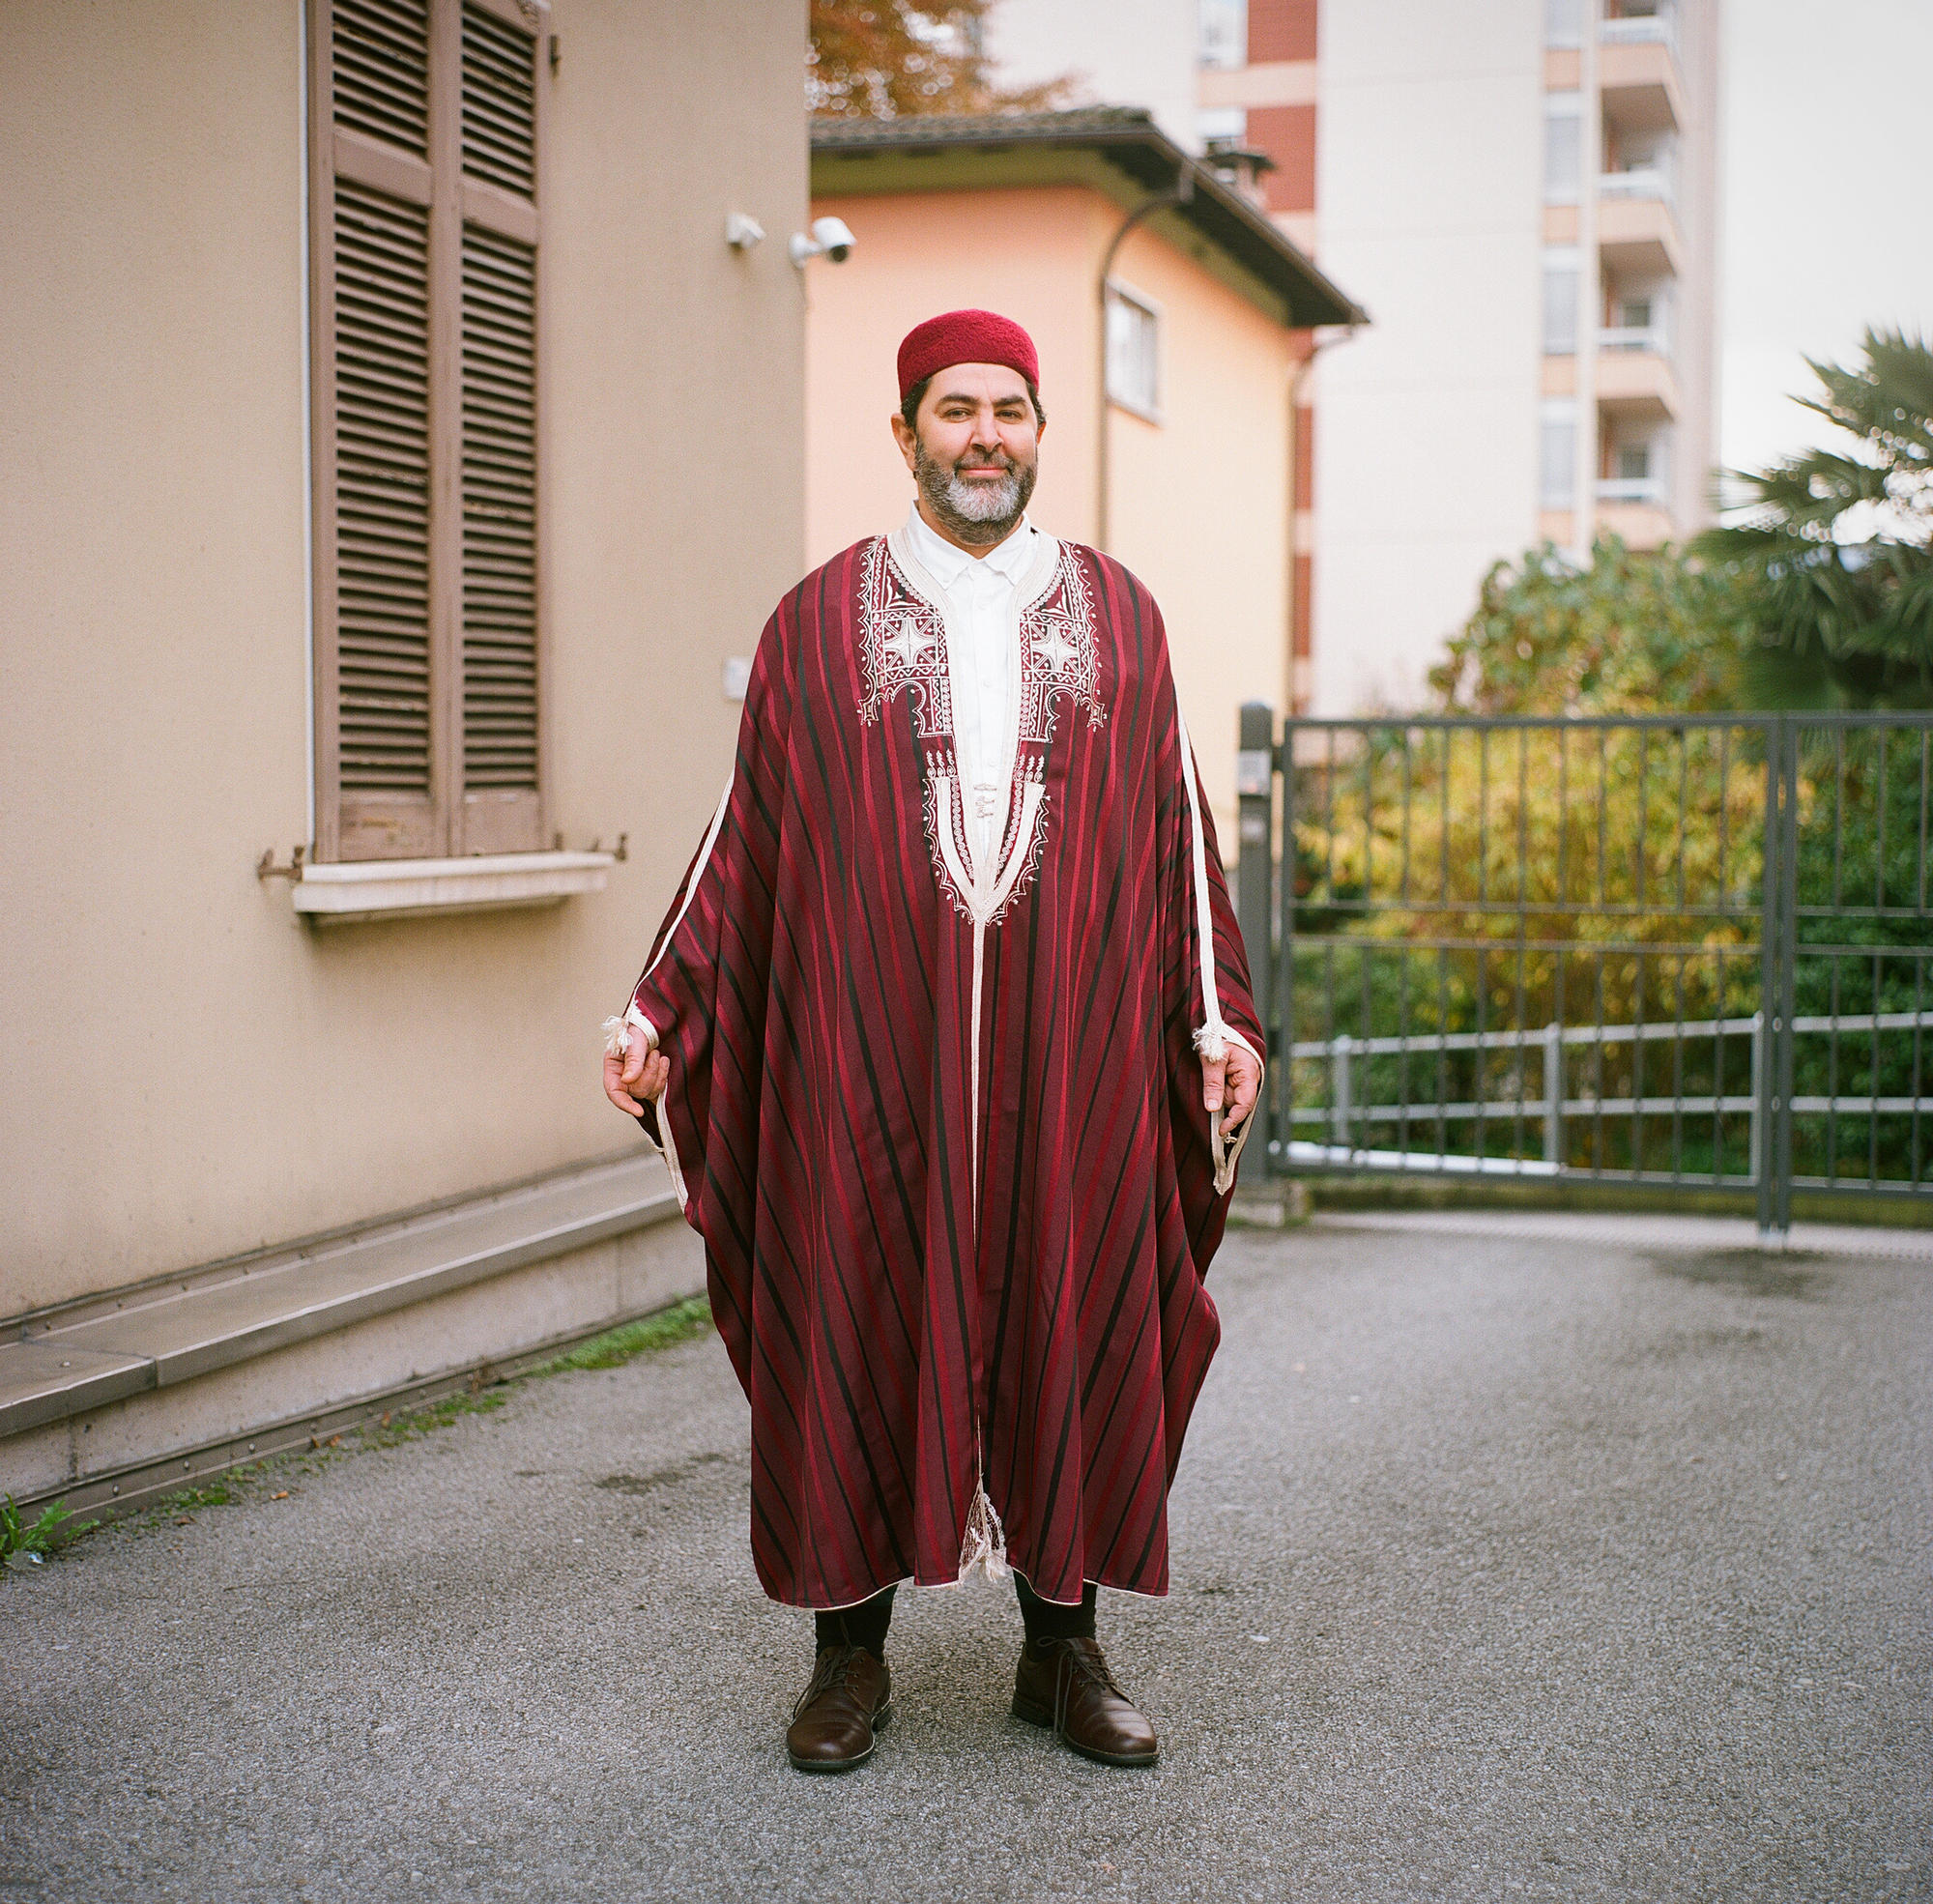 Hombre con vestimenta típica de Túnez Túnica amplia y especie de bonete redondo